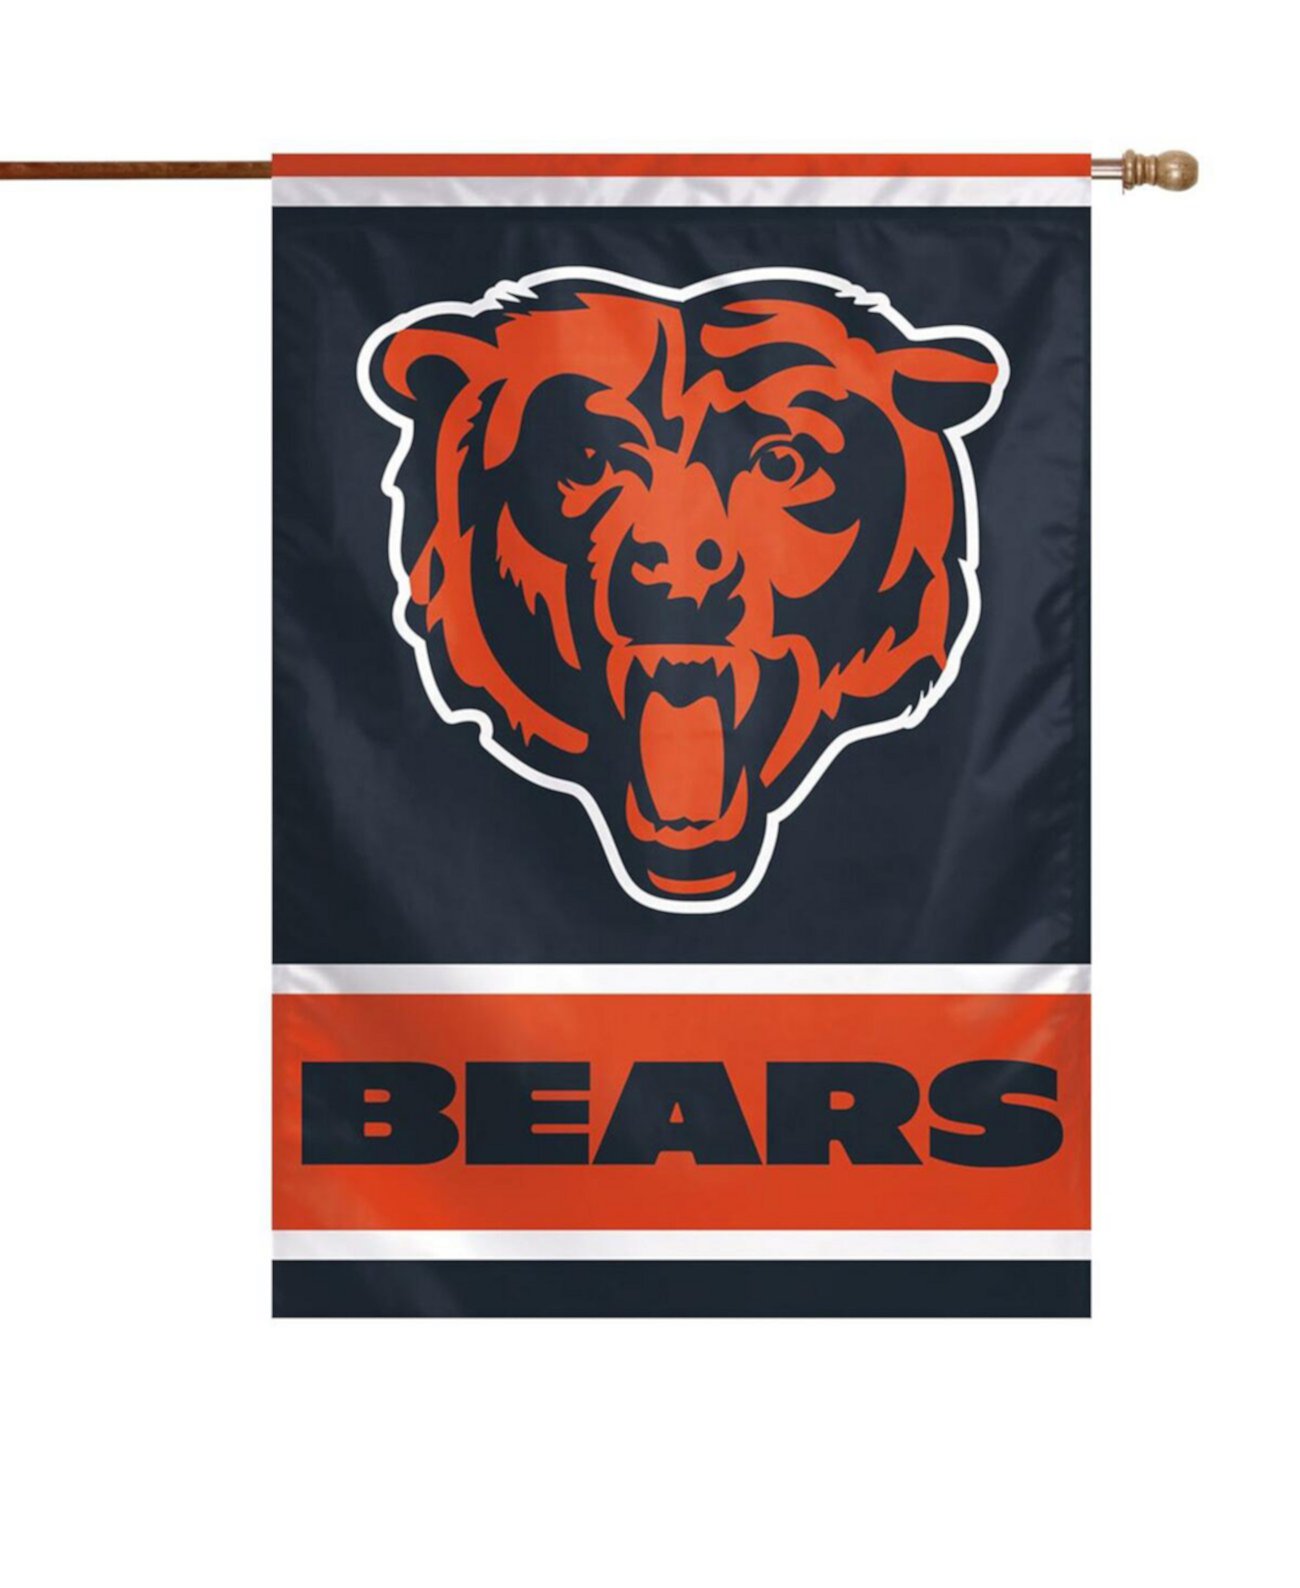 Односторонний вертикальный баннер Chicago Bears 28 x 40 дюймов с основным логотипом Wincraft